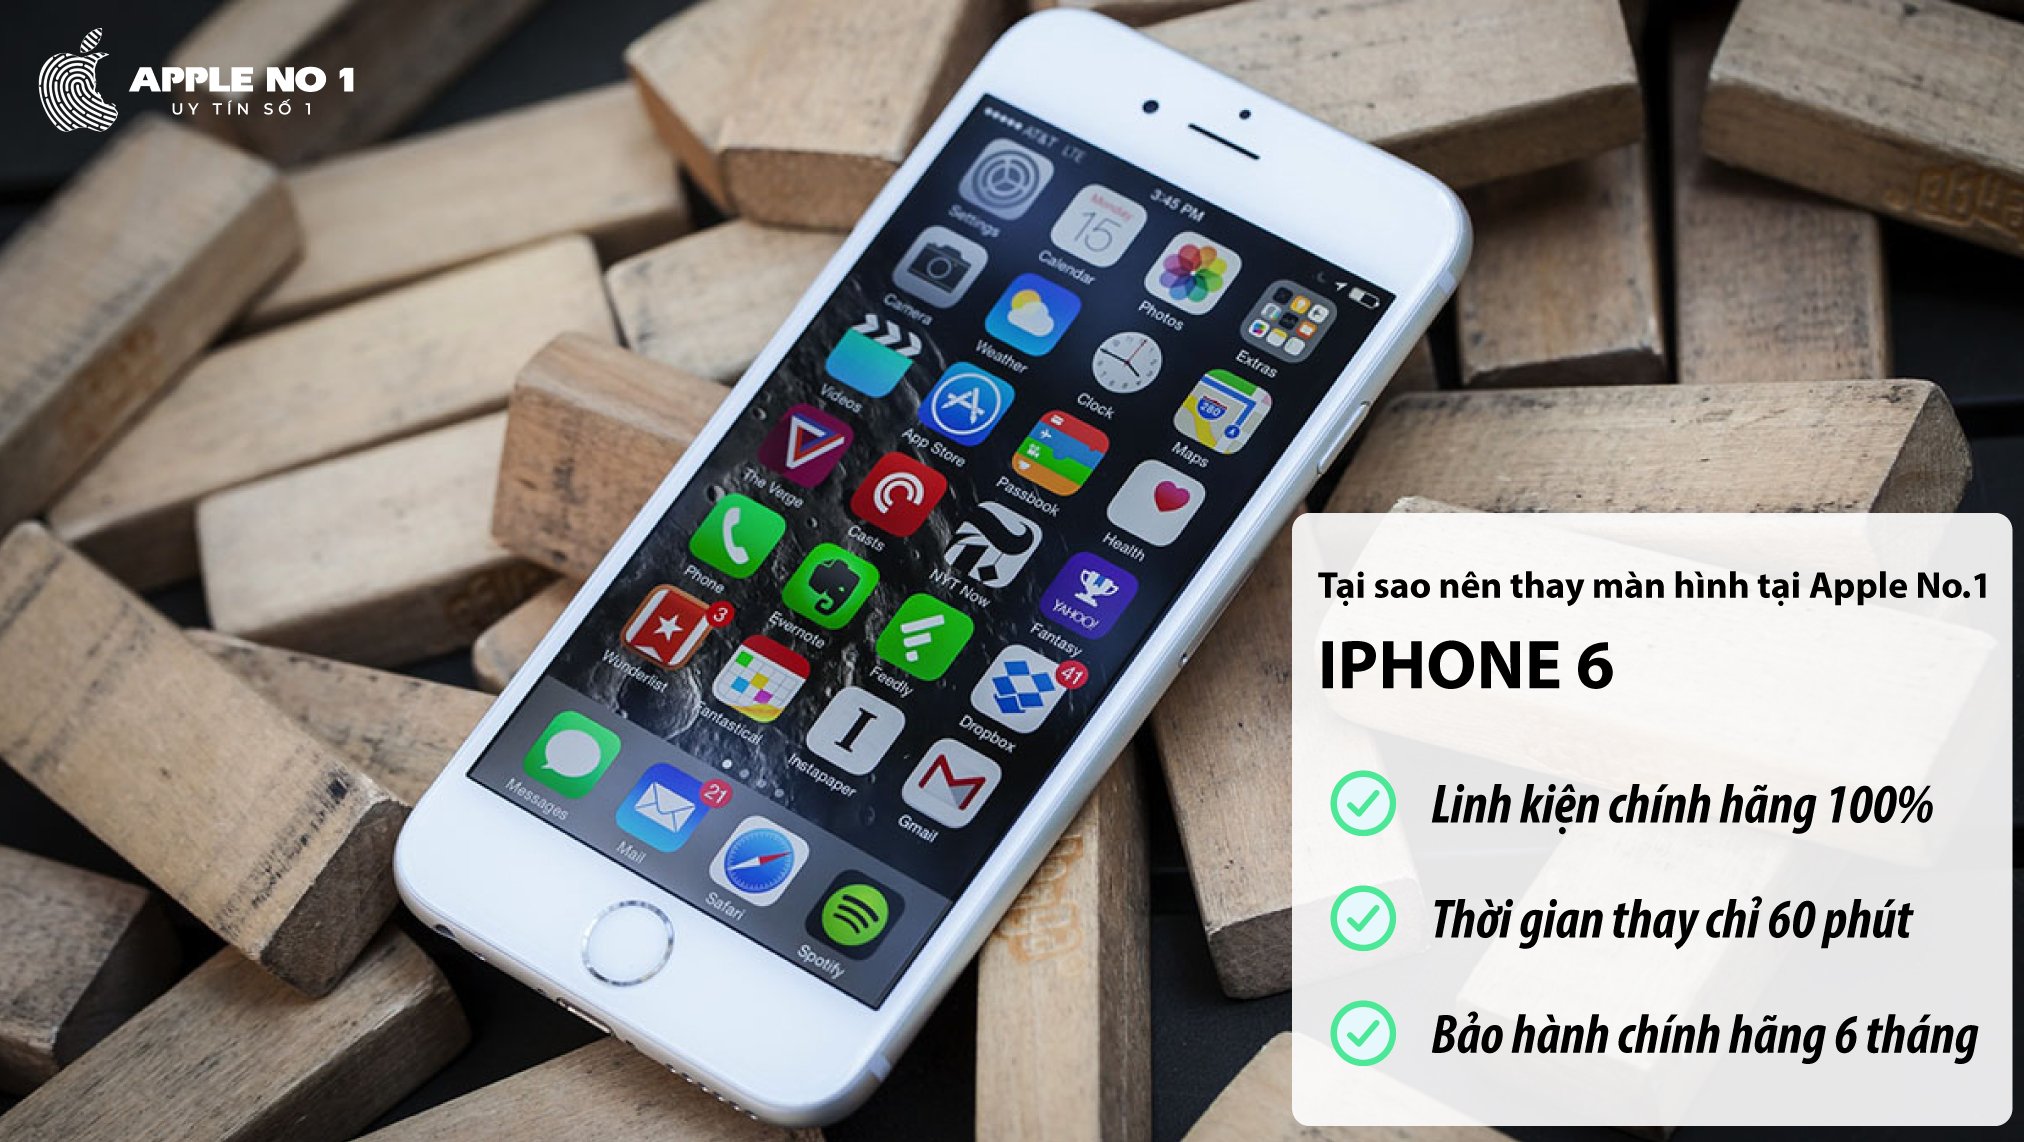 Địa chỉ thay màn hình iPhone 6 giá rẻ, uy tín tại Hà Nội